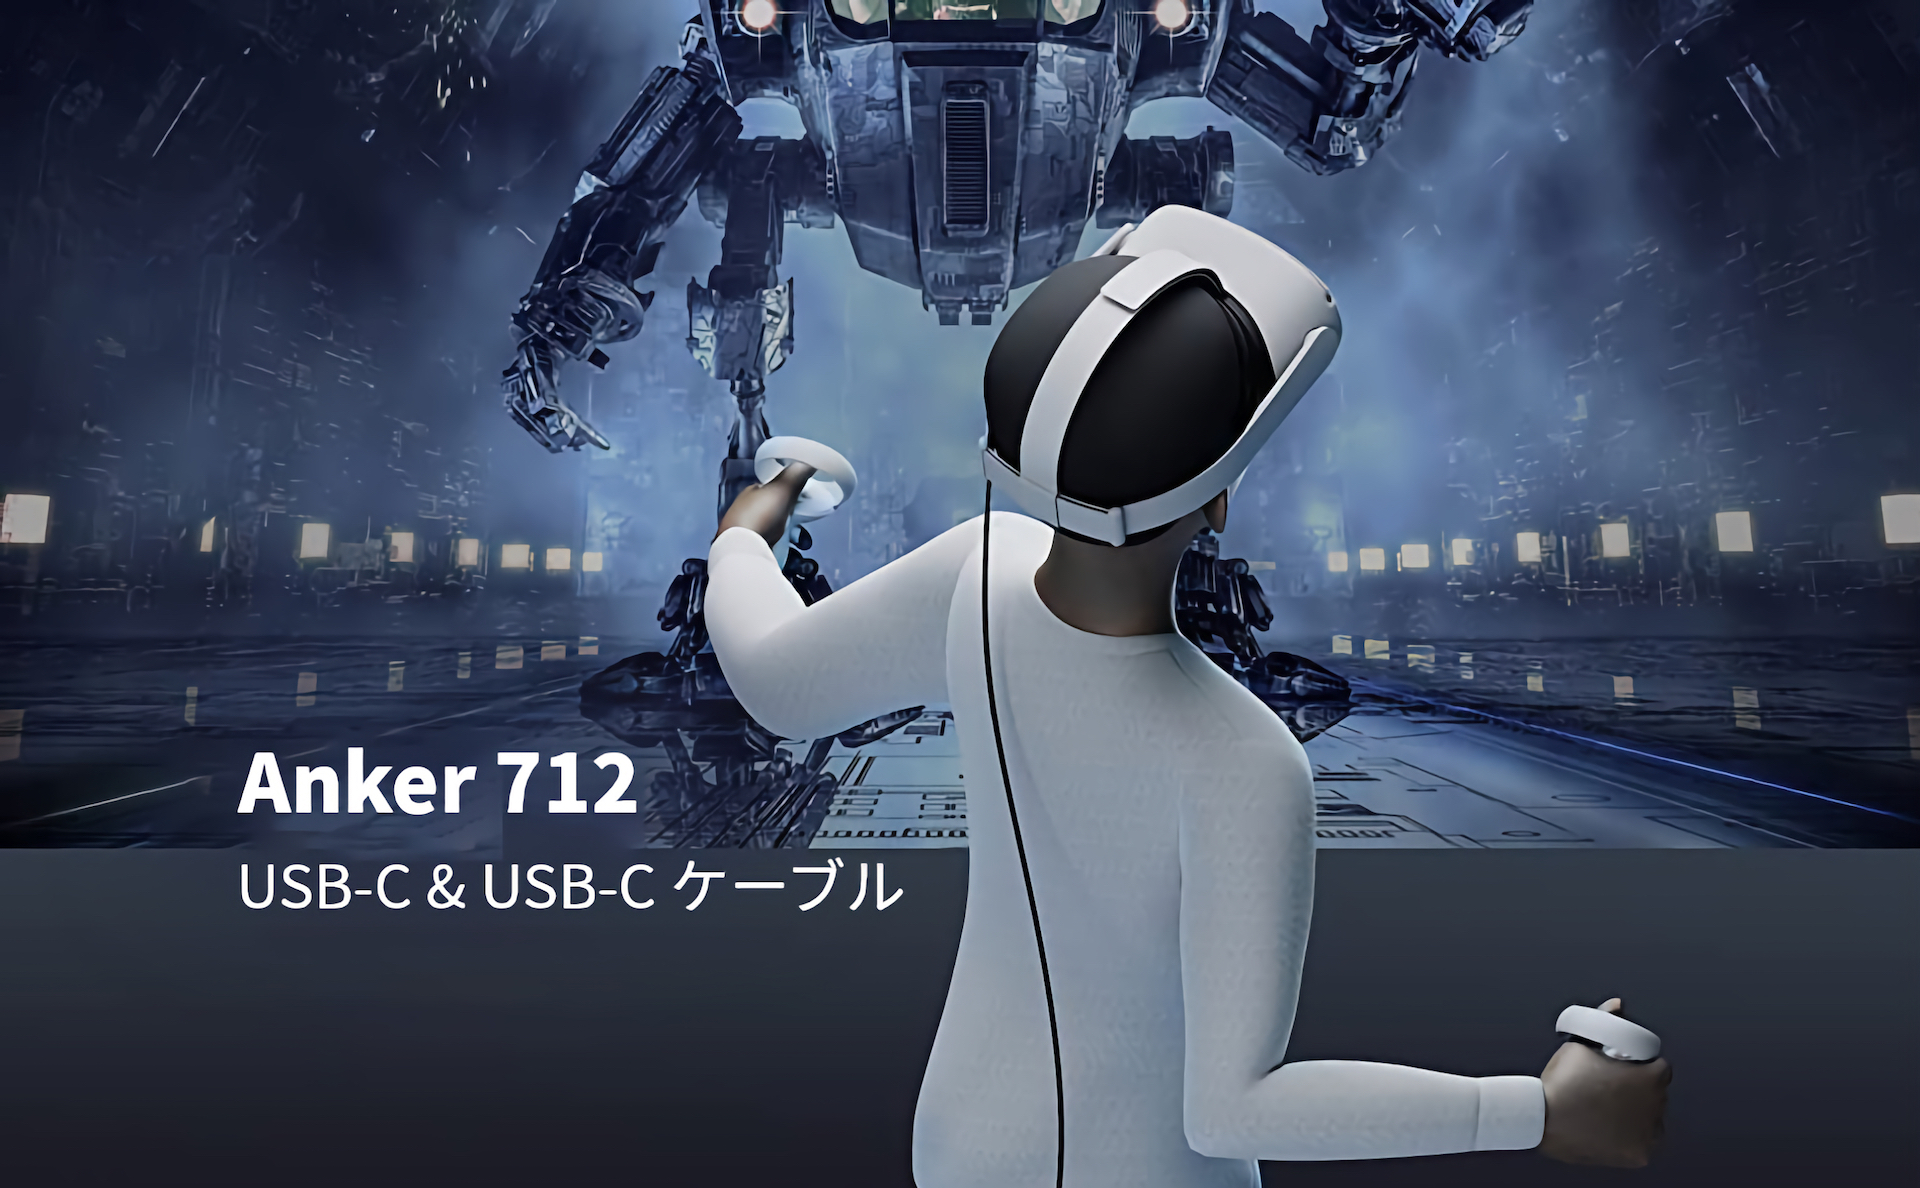 Anker 712 USB-C & USB-C ケーブル